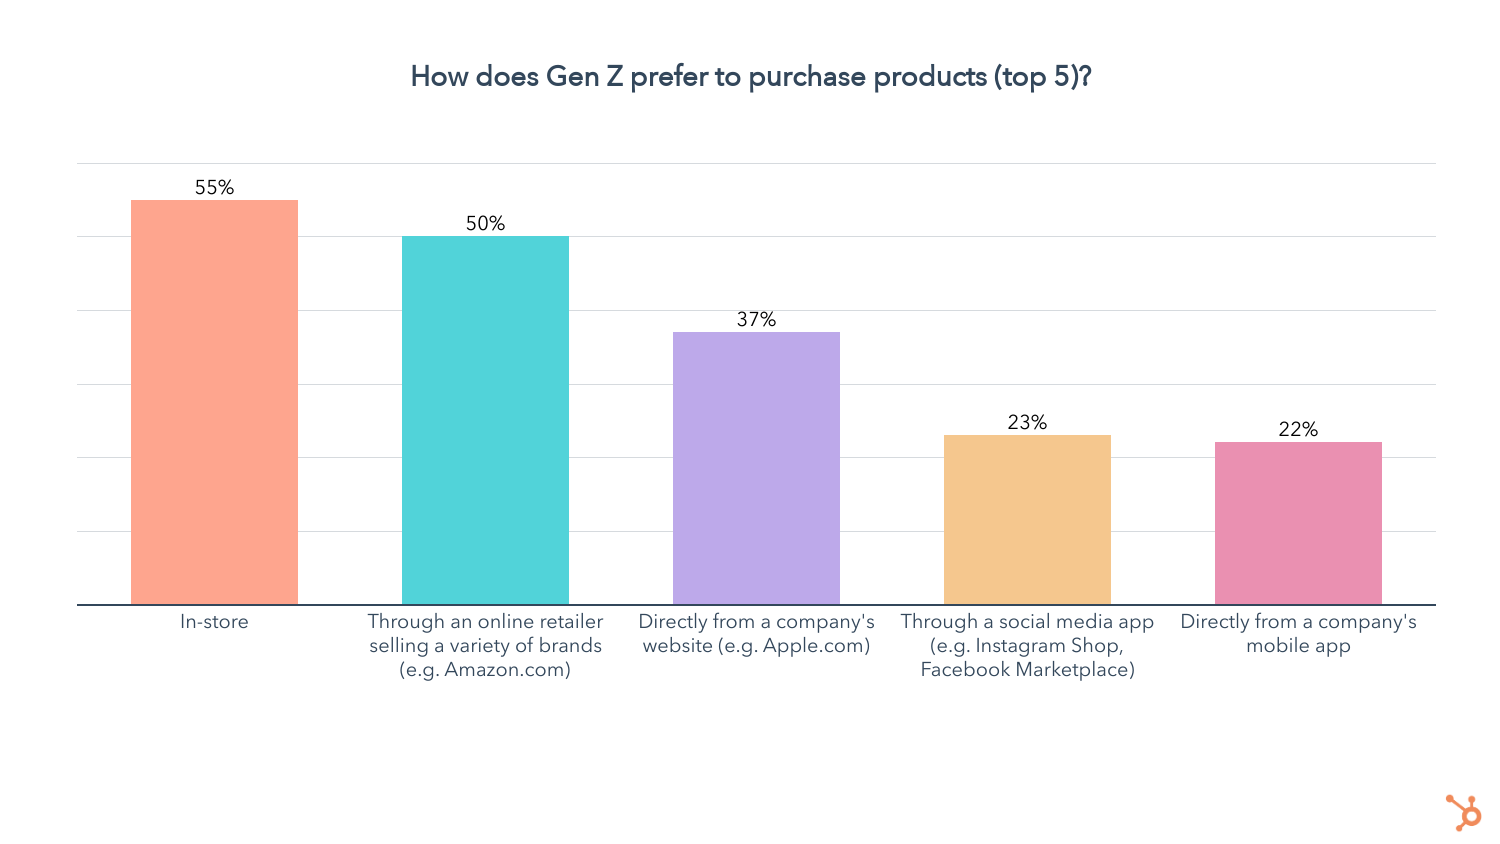 Thế hệ Z thích mua sản phẩm như thế nào?